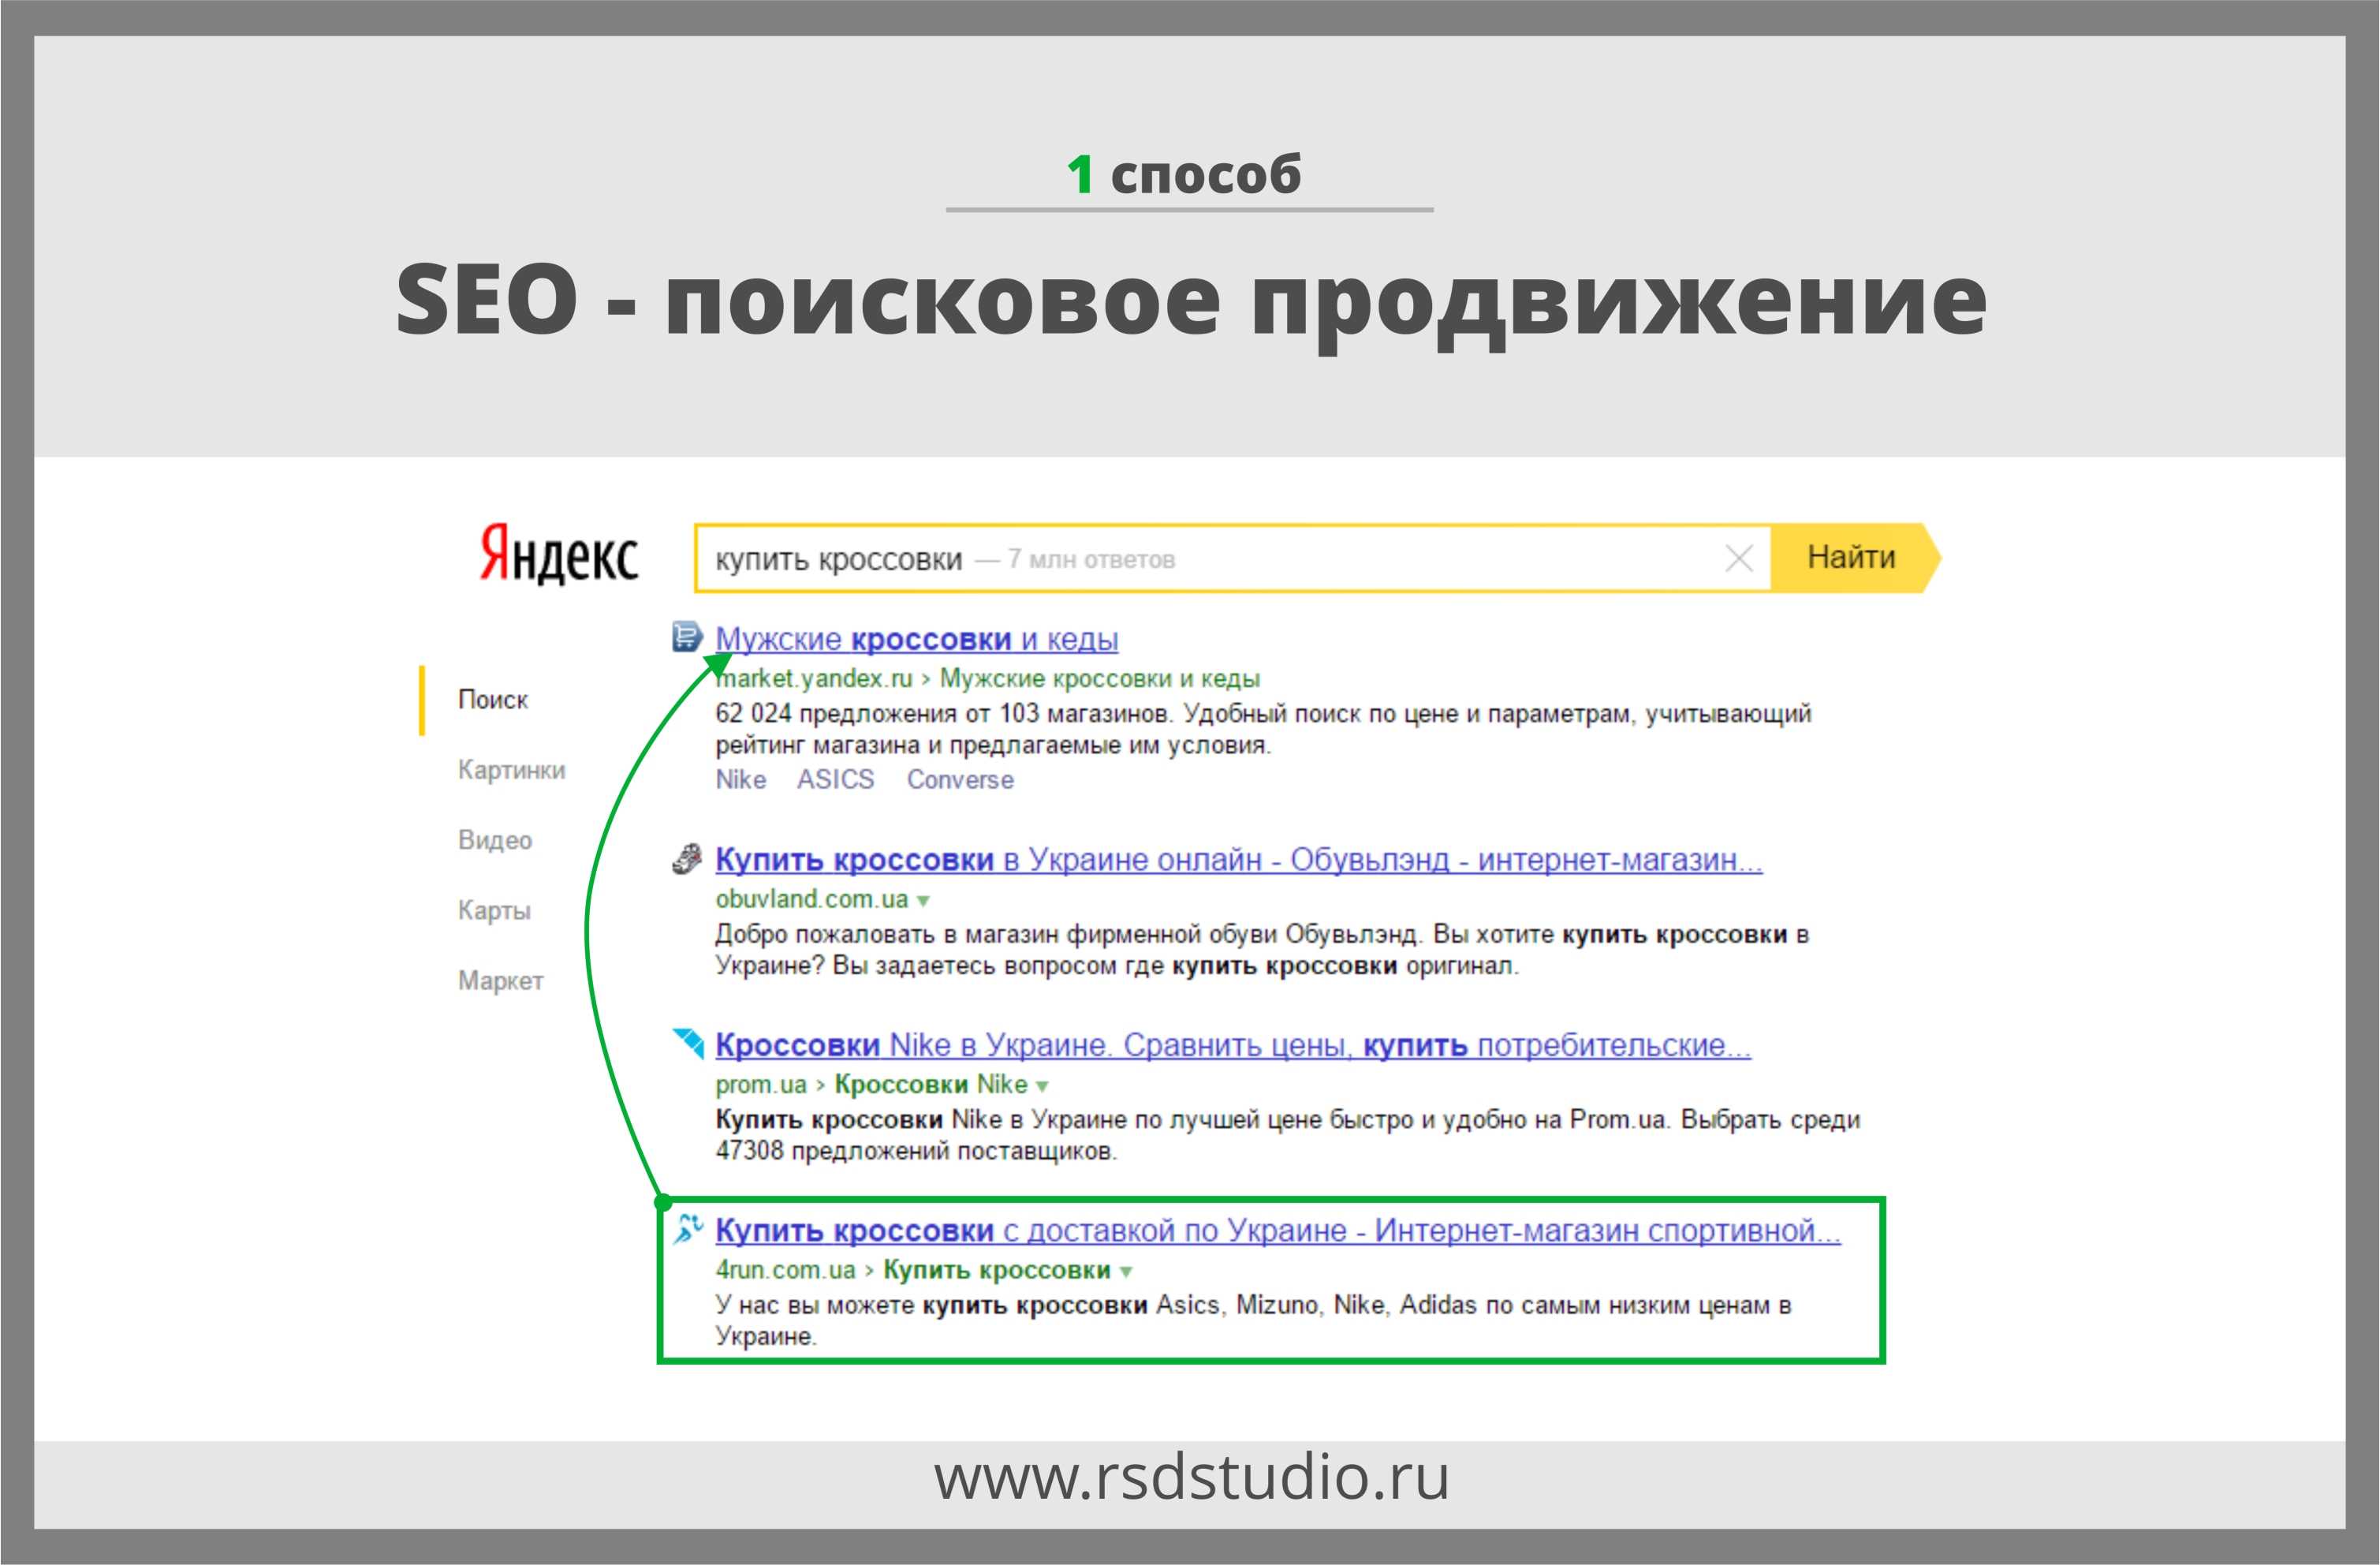 Продвижение в поисковых системах artdirects ru. SEO продвижение пример. SEO продвижение сайта в поисковых системах. Поисковая оптимизация пример. Сео оптимизация примеры.